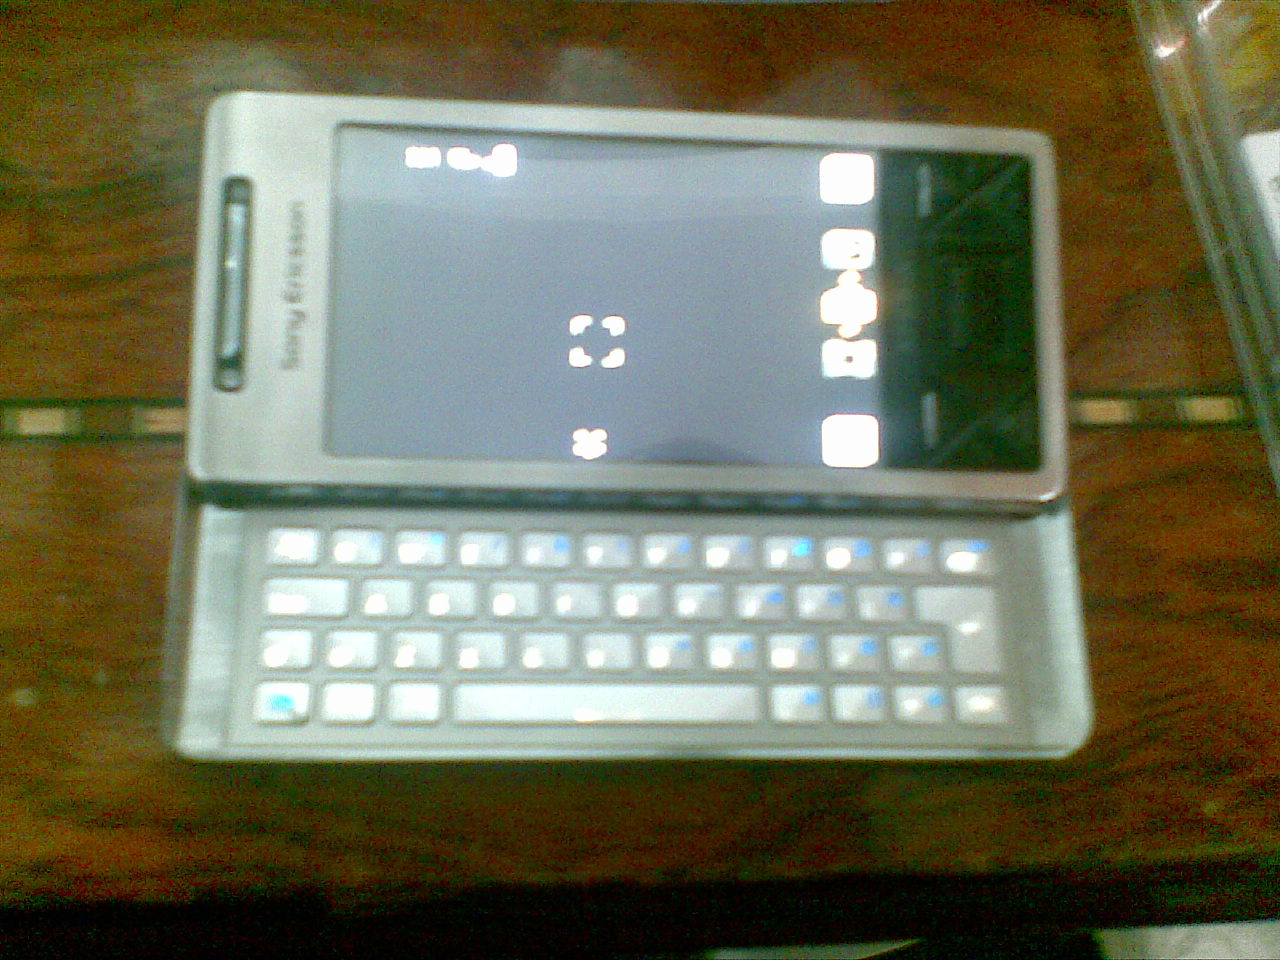     Sony Ericsson x1